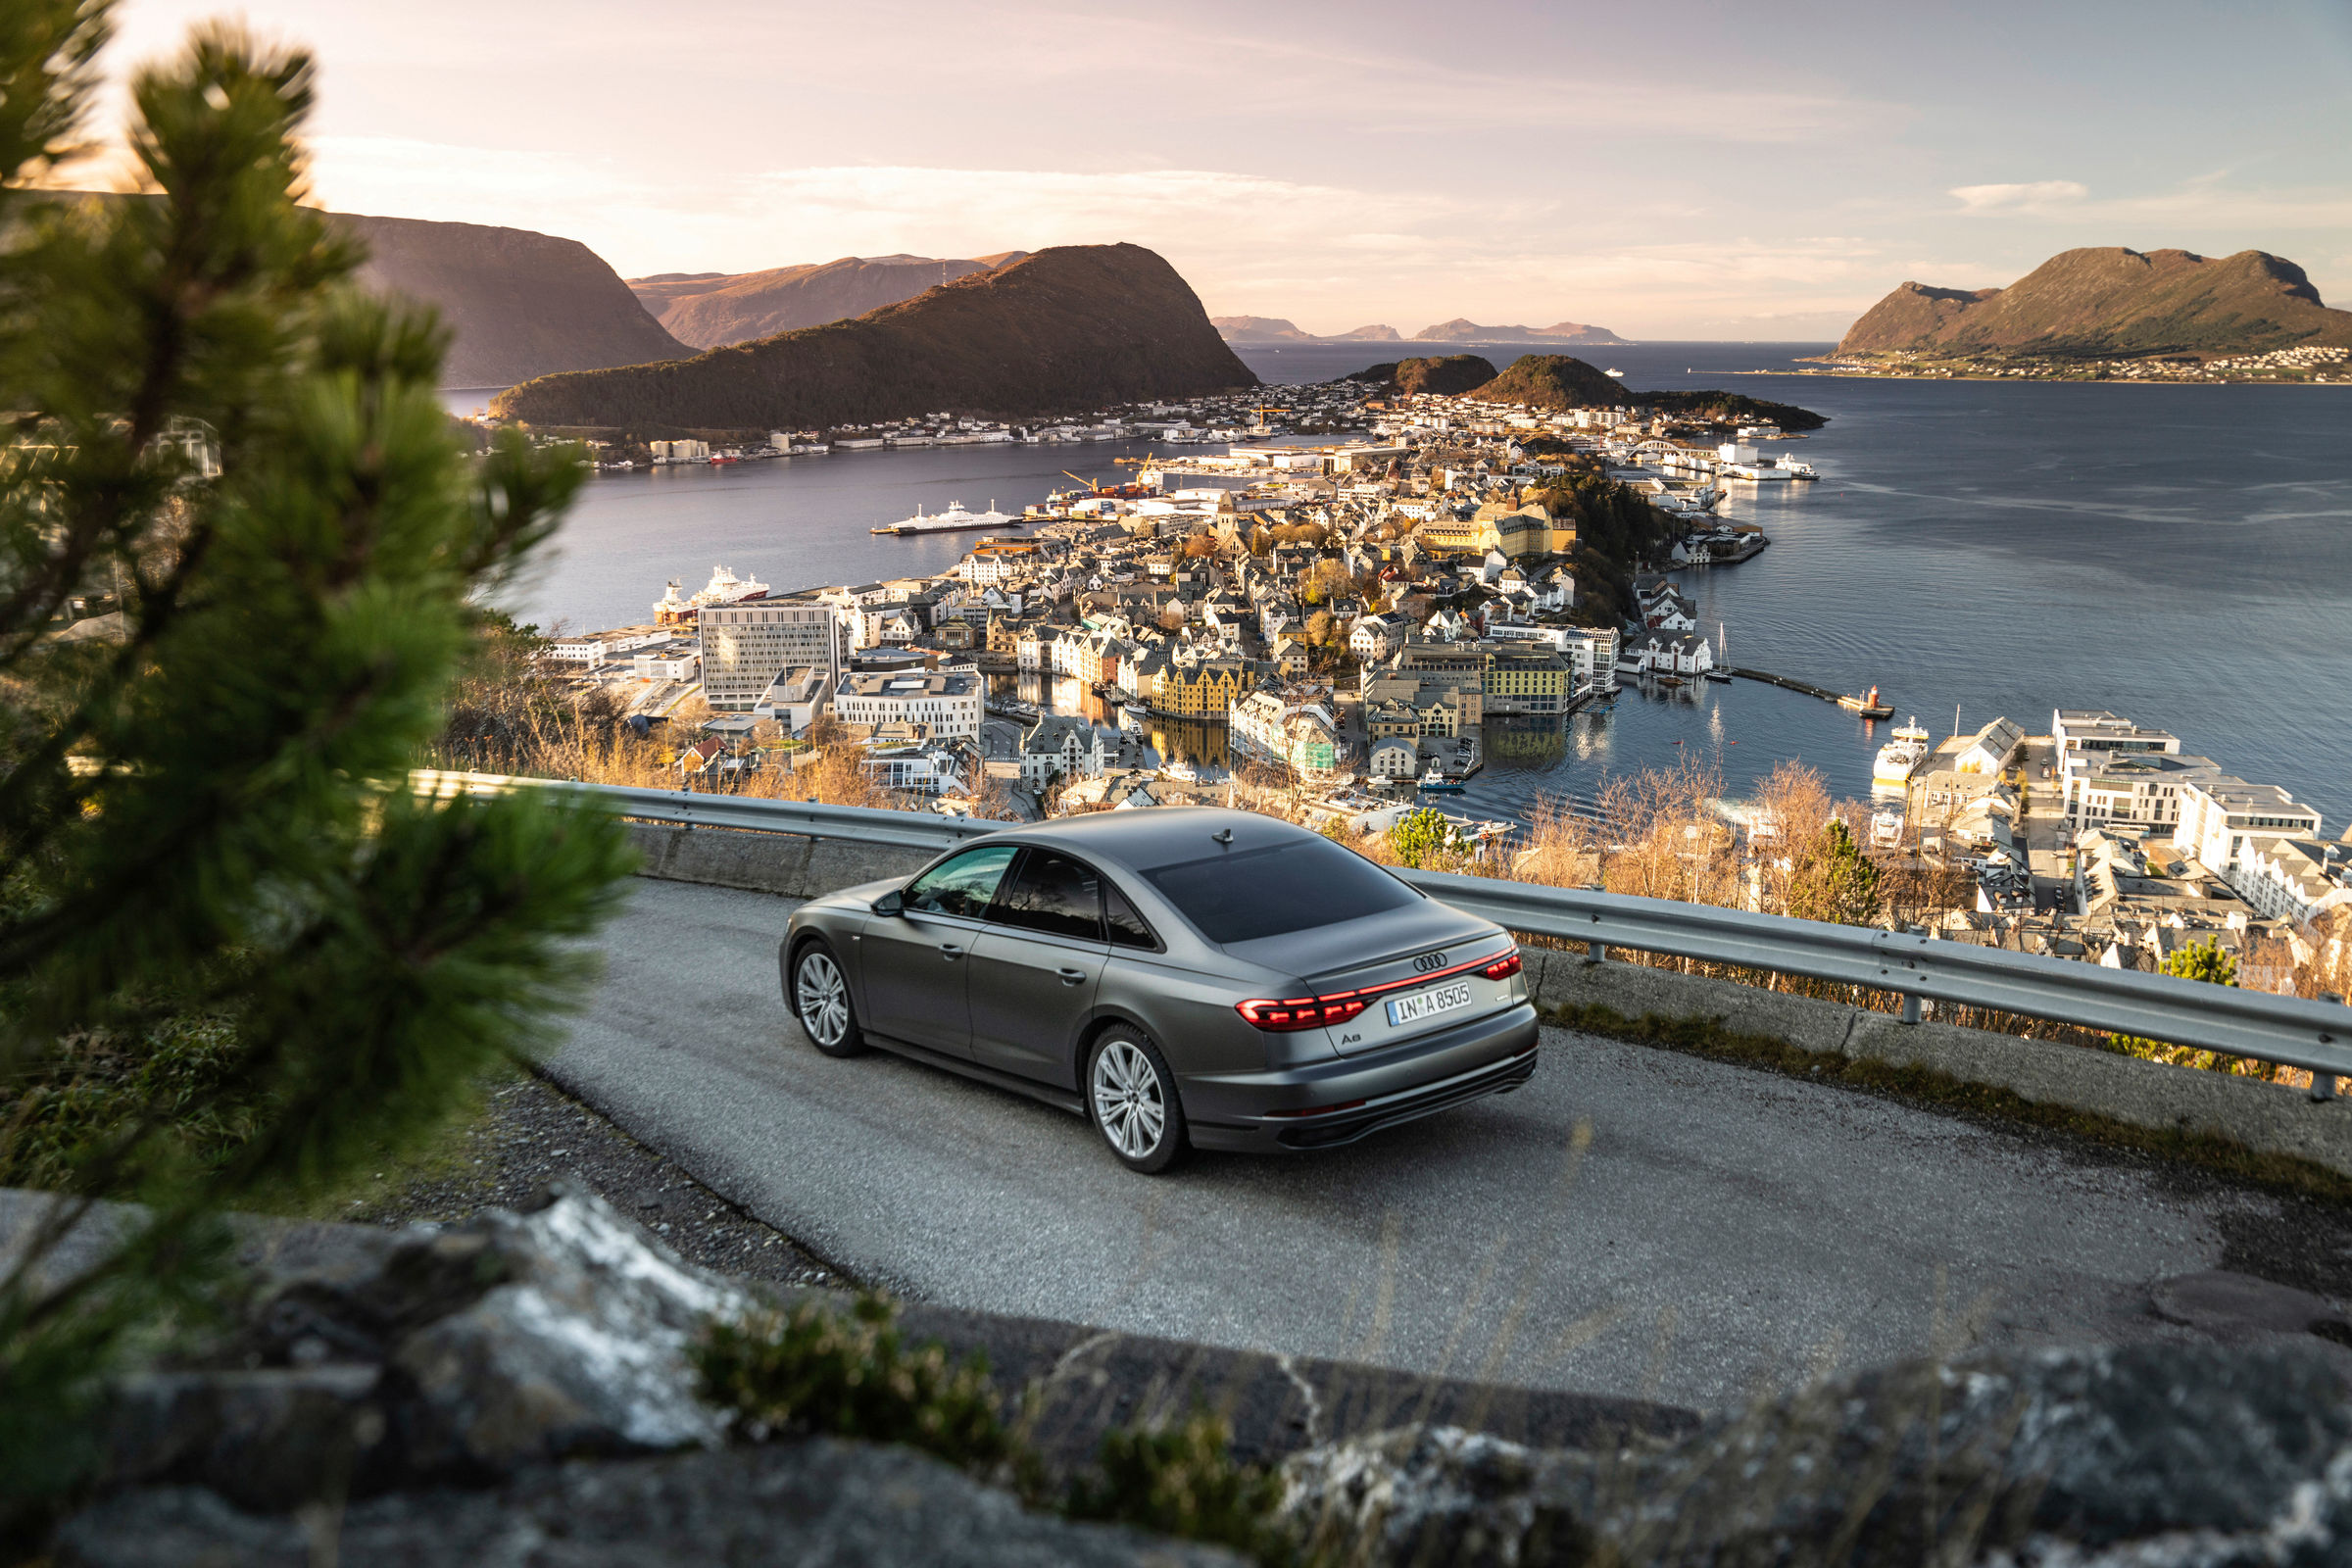 Emocionální prémiová mobilita: Interiér modelu Audi A8 nabízí velmi kvalitní zážitky